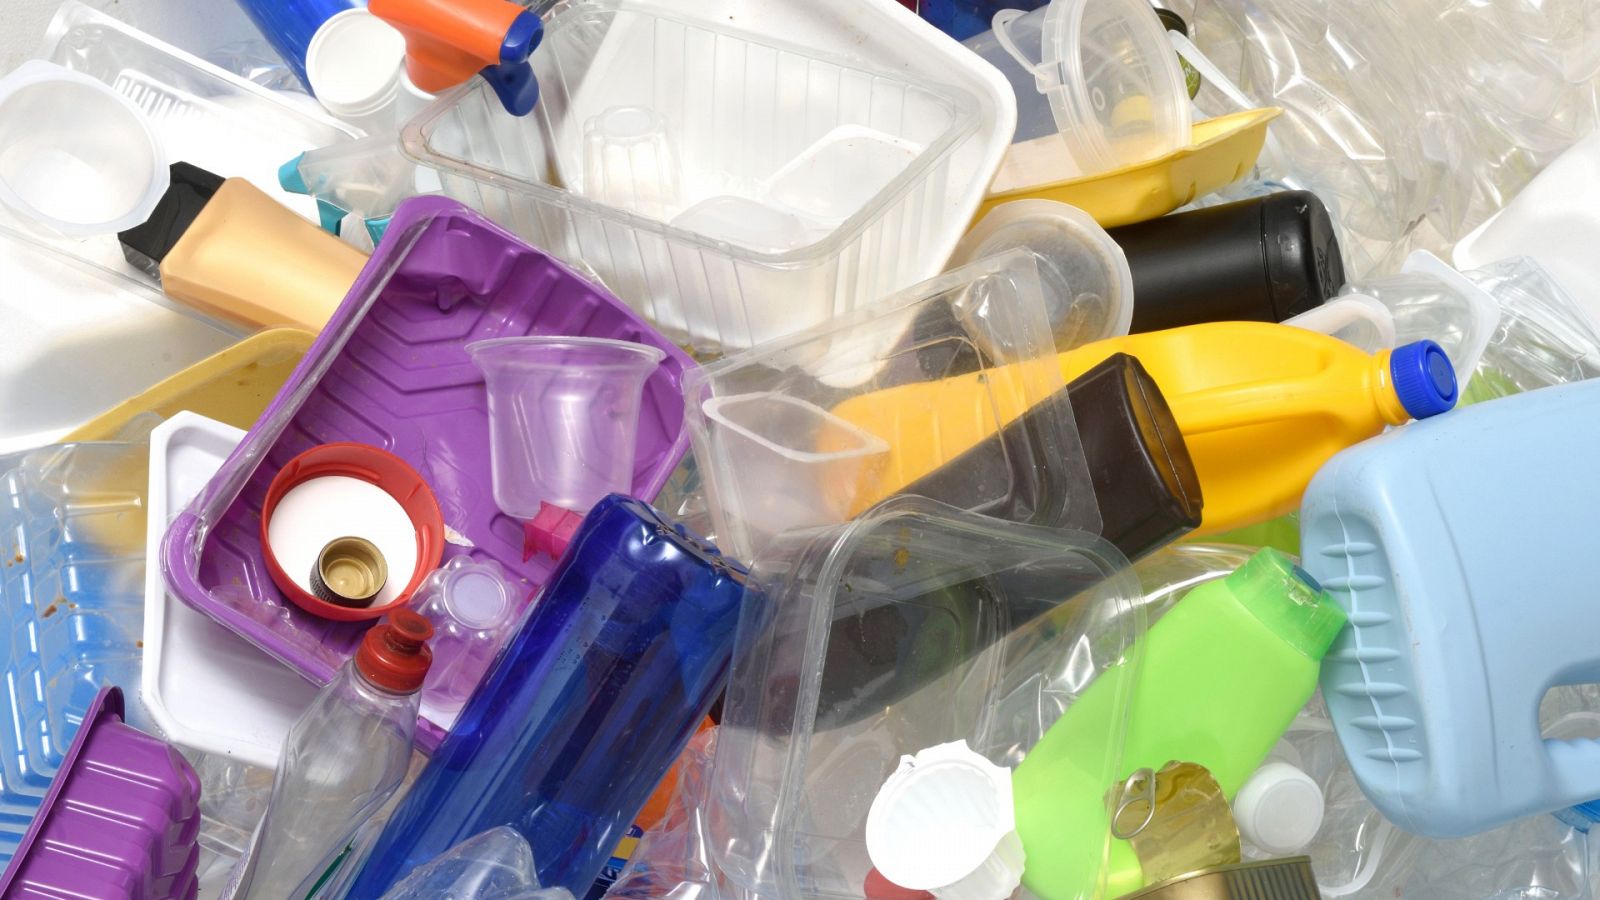 Ribera informa que el anteproyecto establecerá un impuesto indirecto a los envases de plástico no reutilizables